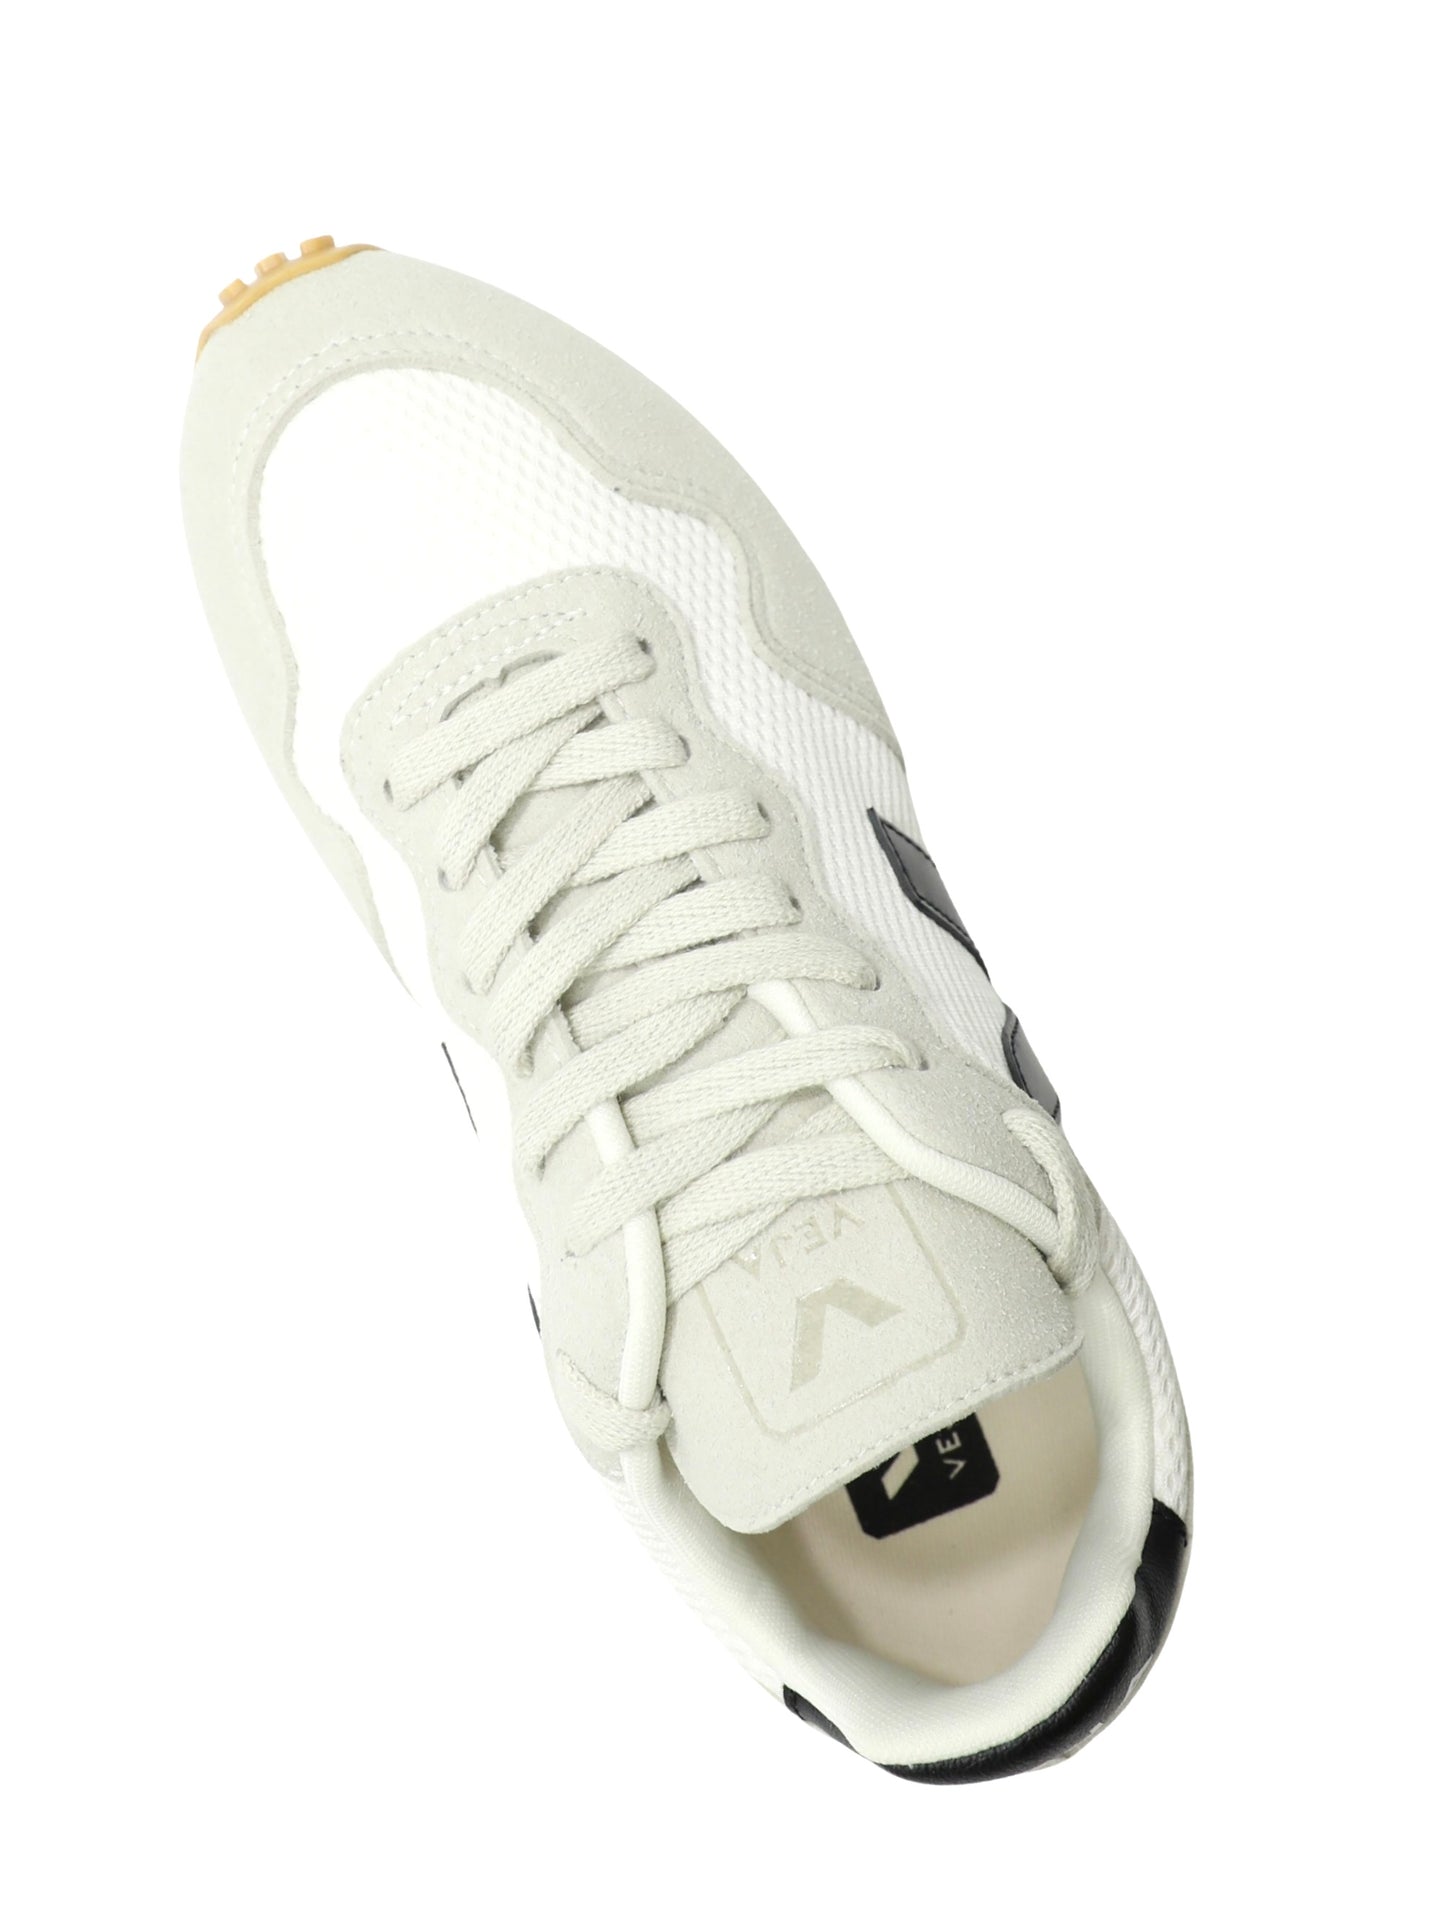 Veja SDU Rec Alveomesh Sneaker in White/Black/Natural